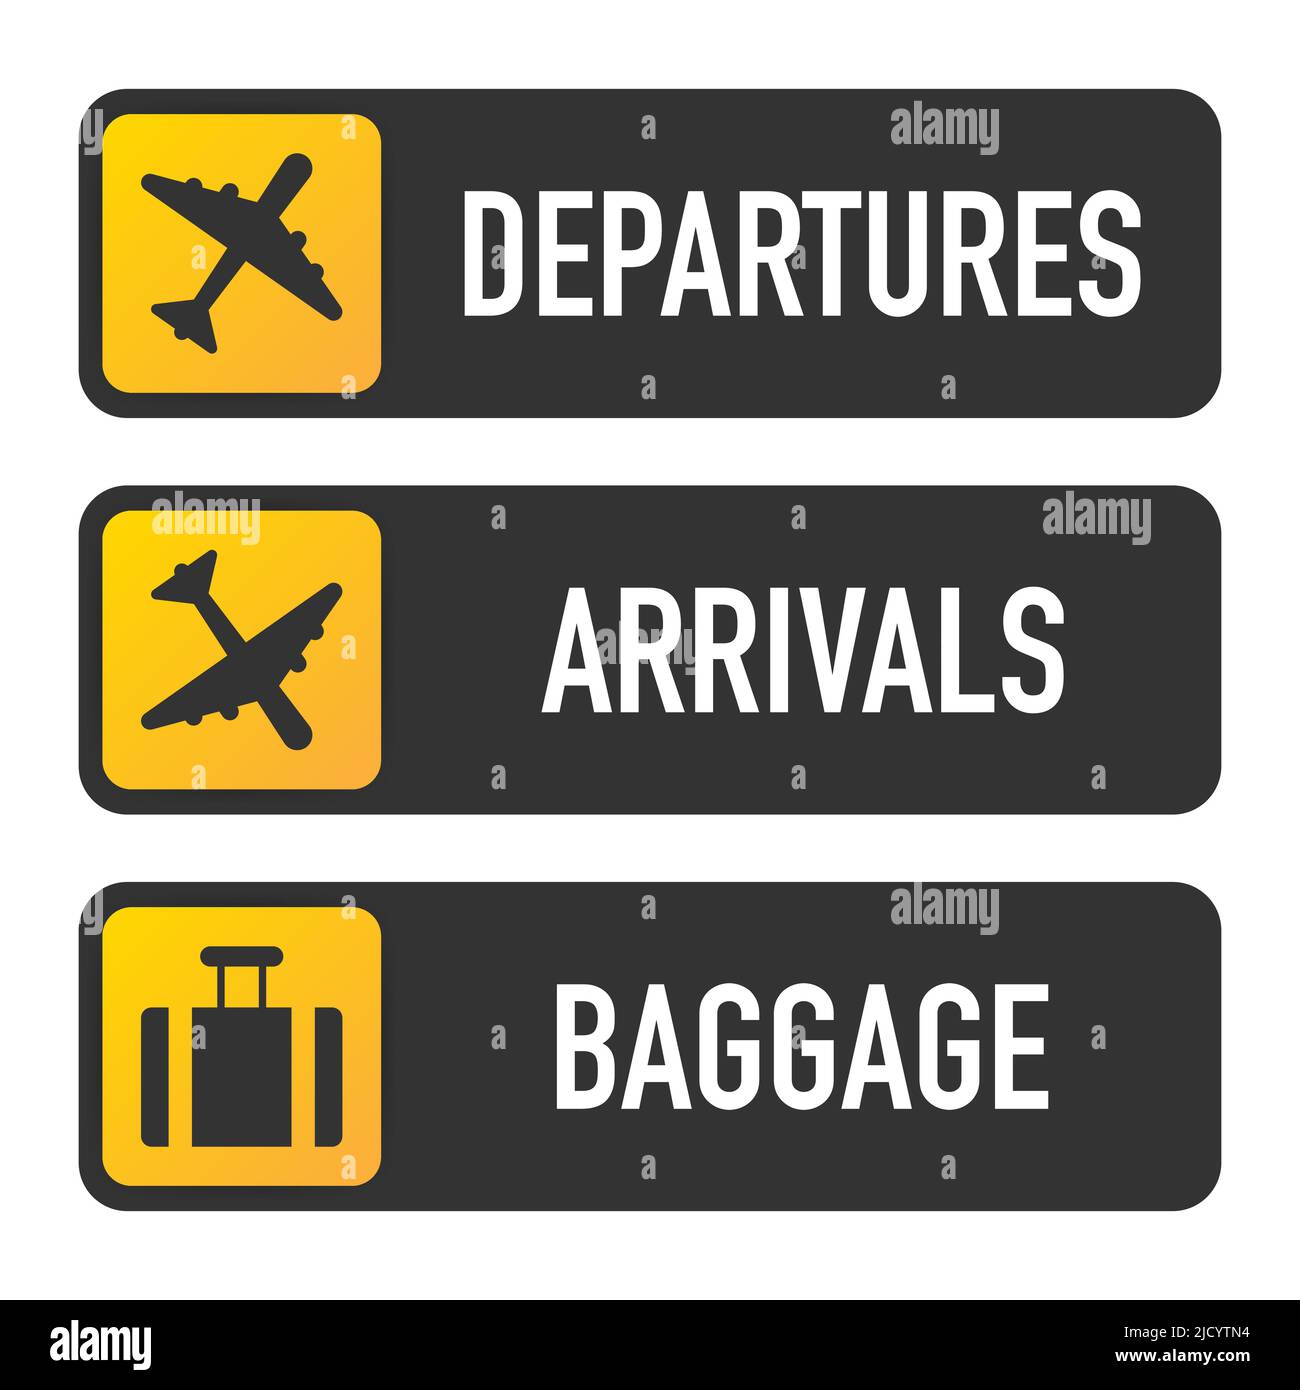 Der Flughafen signiert Abflug, Ankunft und Gepäck. Stock Vektor